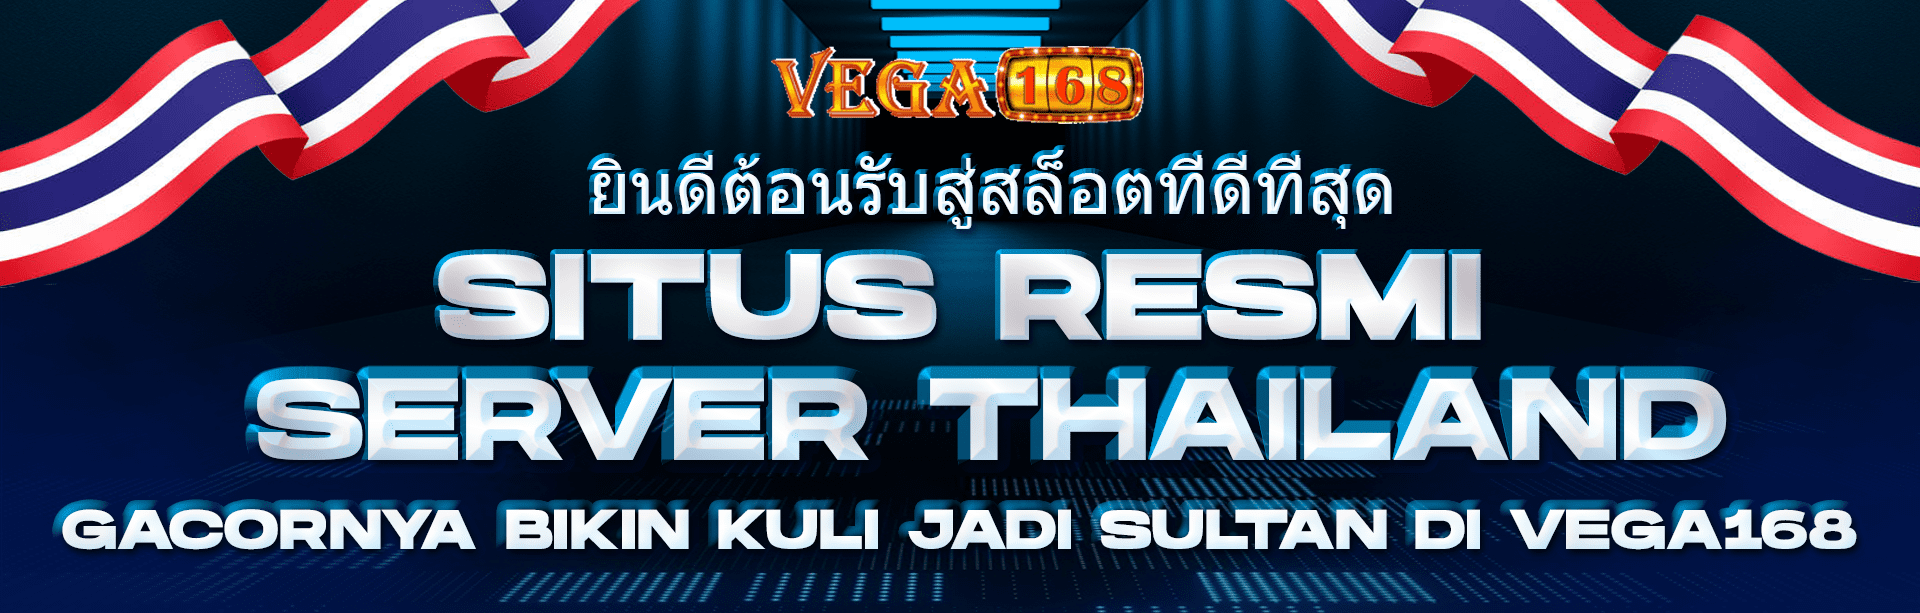 SITUS RESMI THAILAND VEGA168